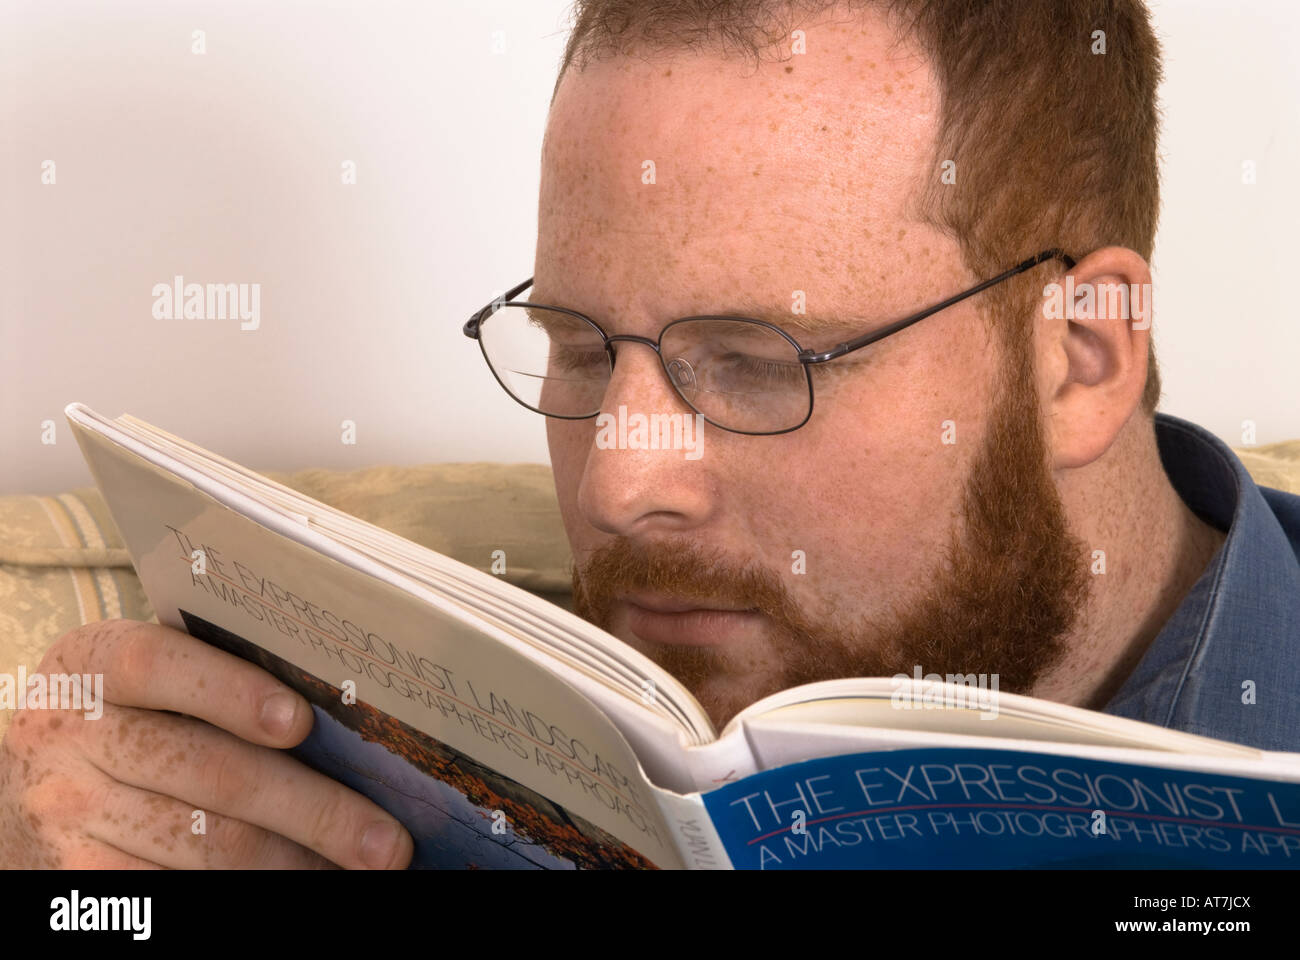 Junger Mann mit schlechter Sehkraft, Brille, die Augen zum Lesen von Büchern strapaziert, falsche Brille, zu nah am Buch Stockfoto